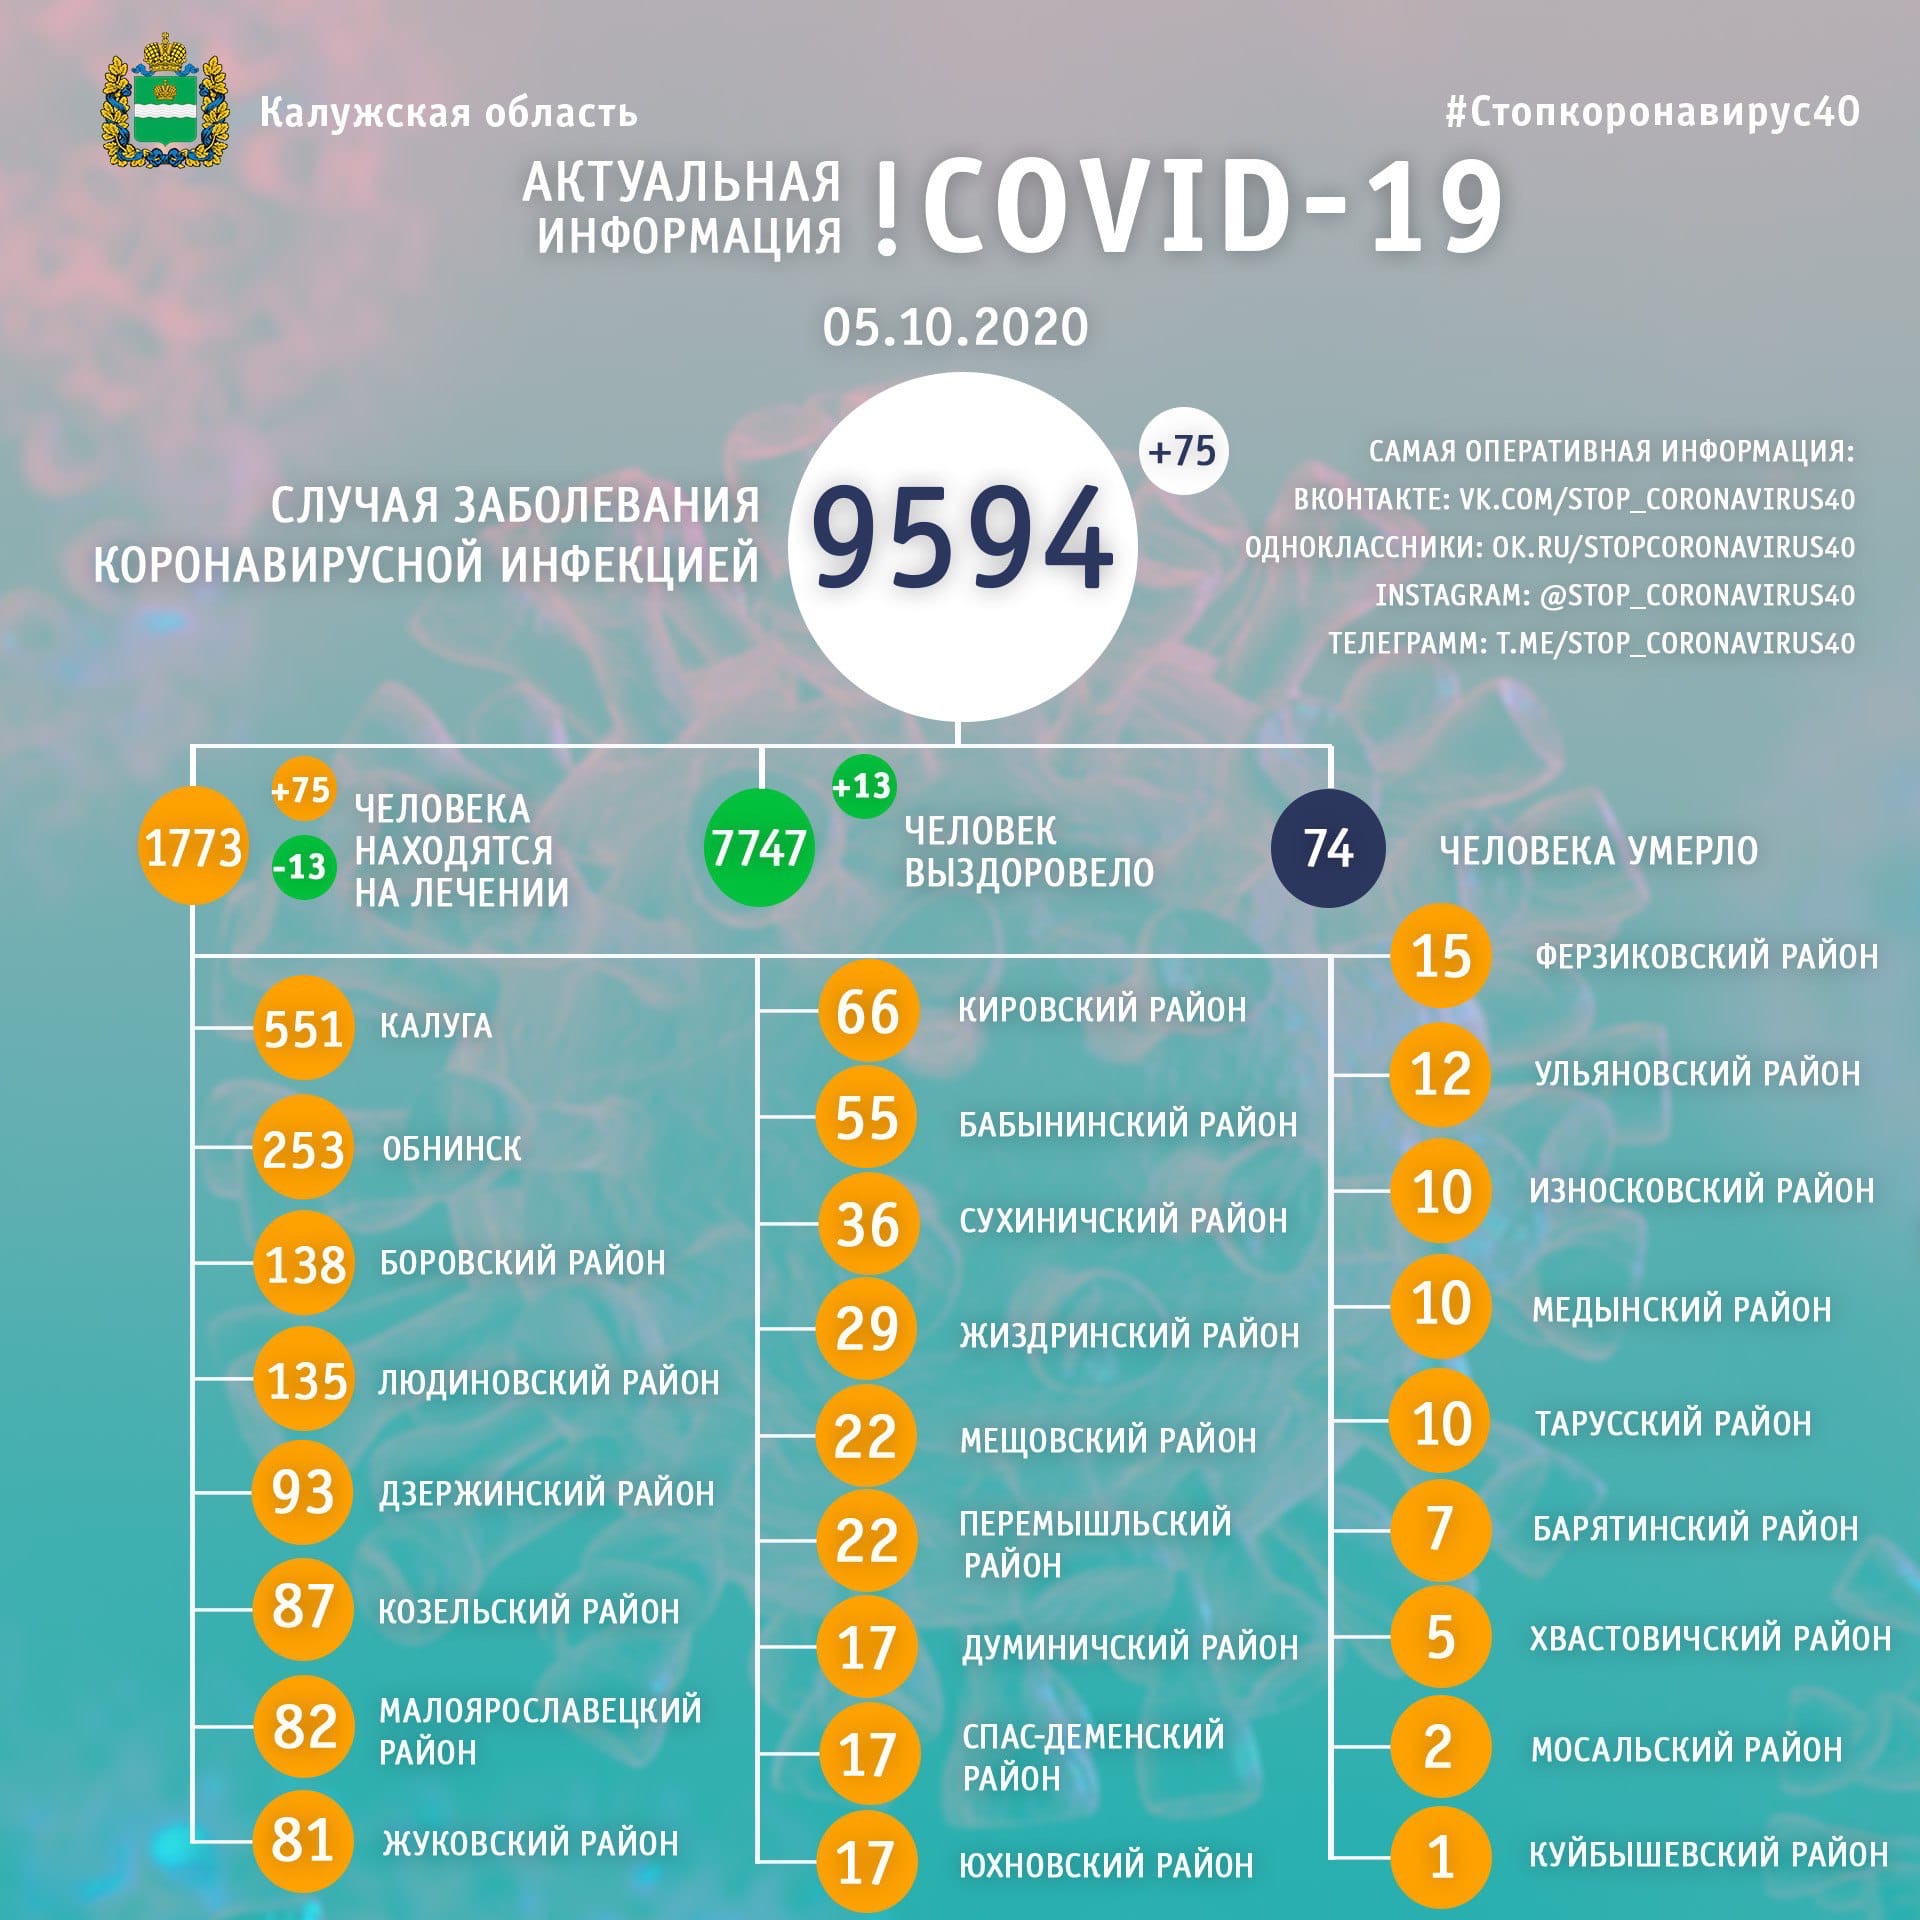 Официальная статистика по коронавирусу в Калужской области на 5 октября 2020 года.